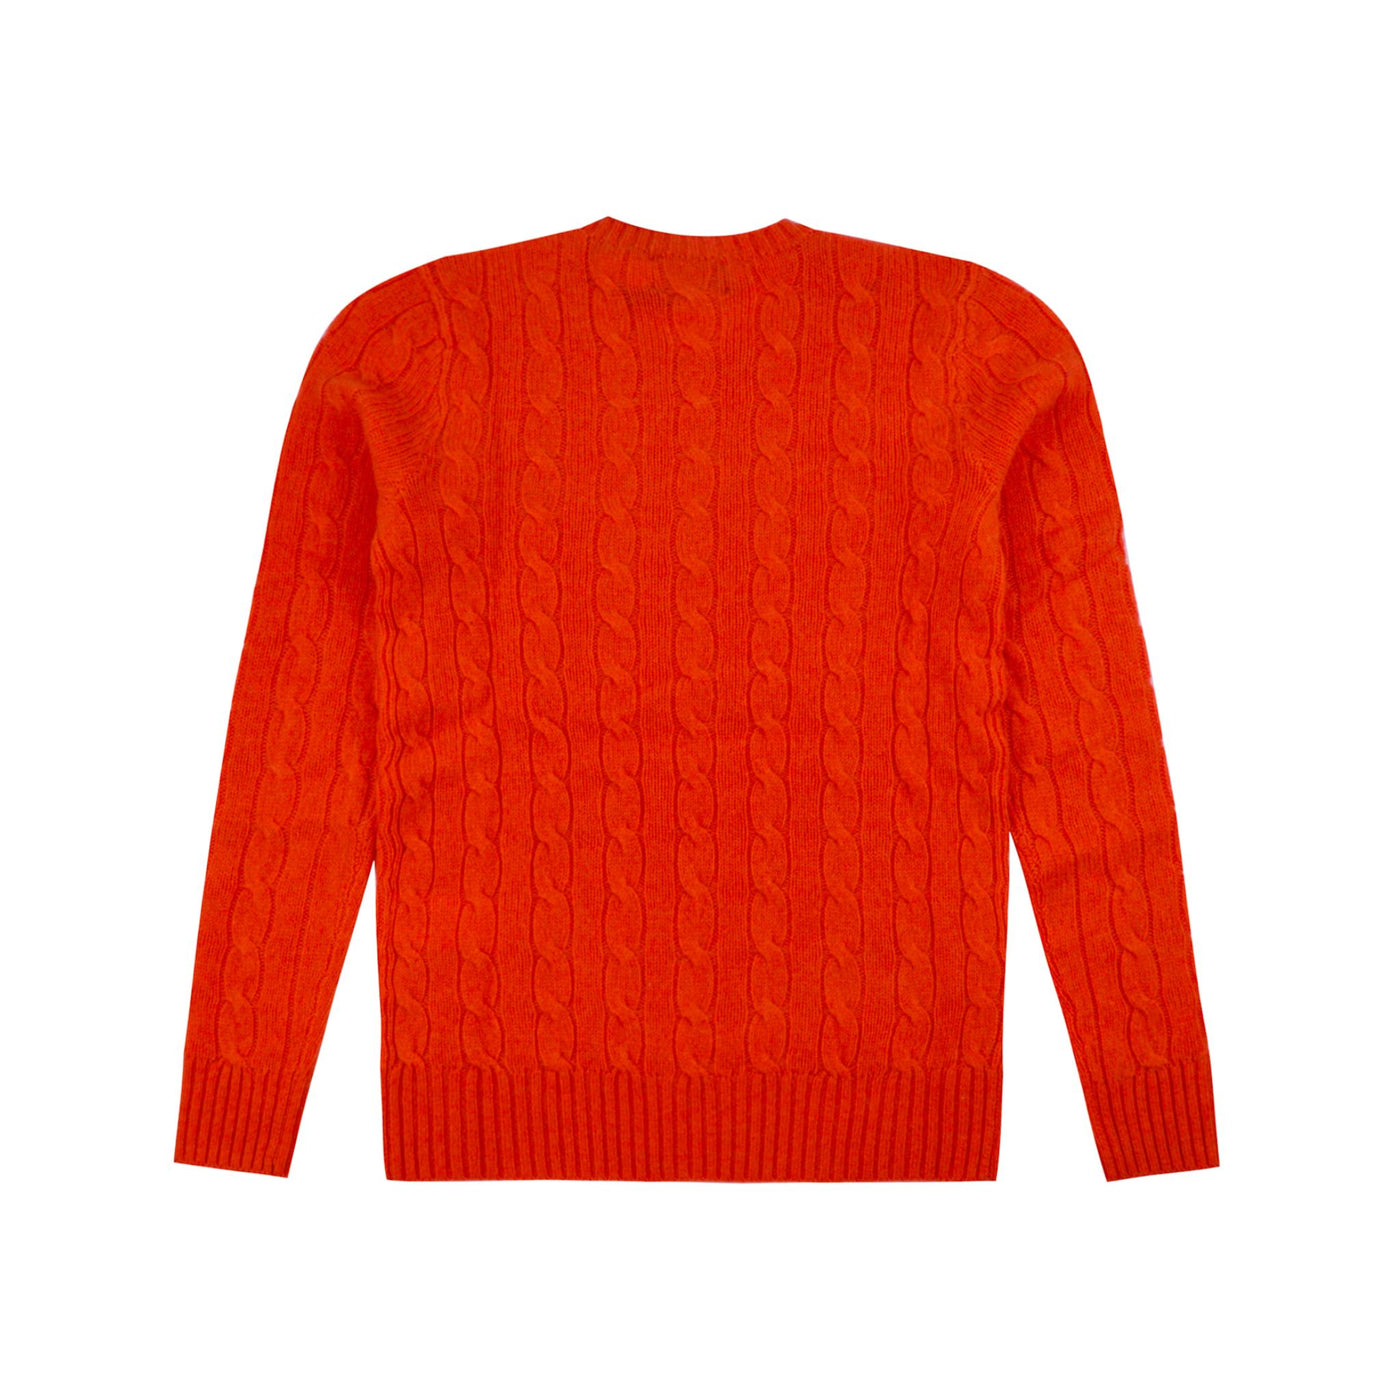 Orange wool blend women's sweater